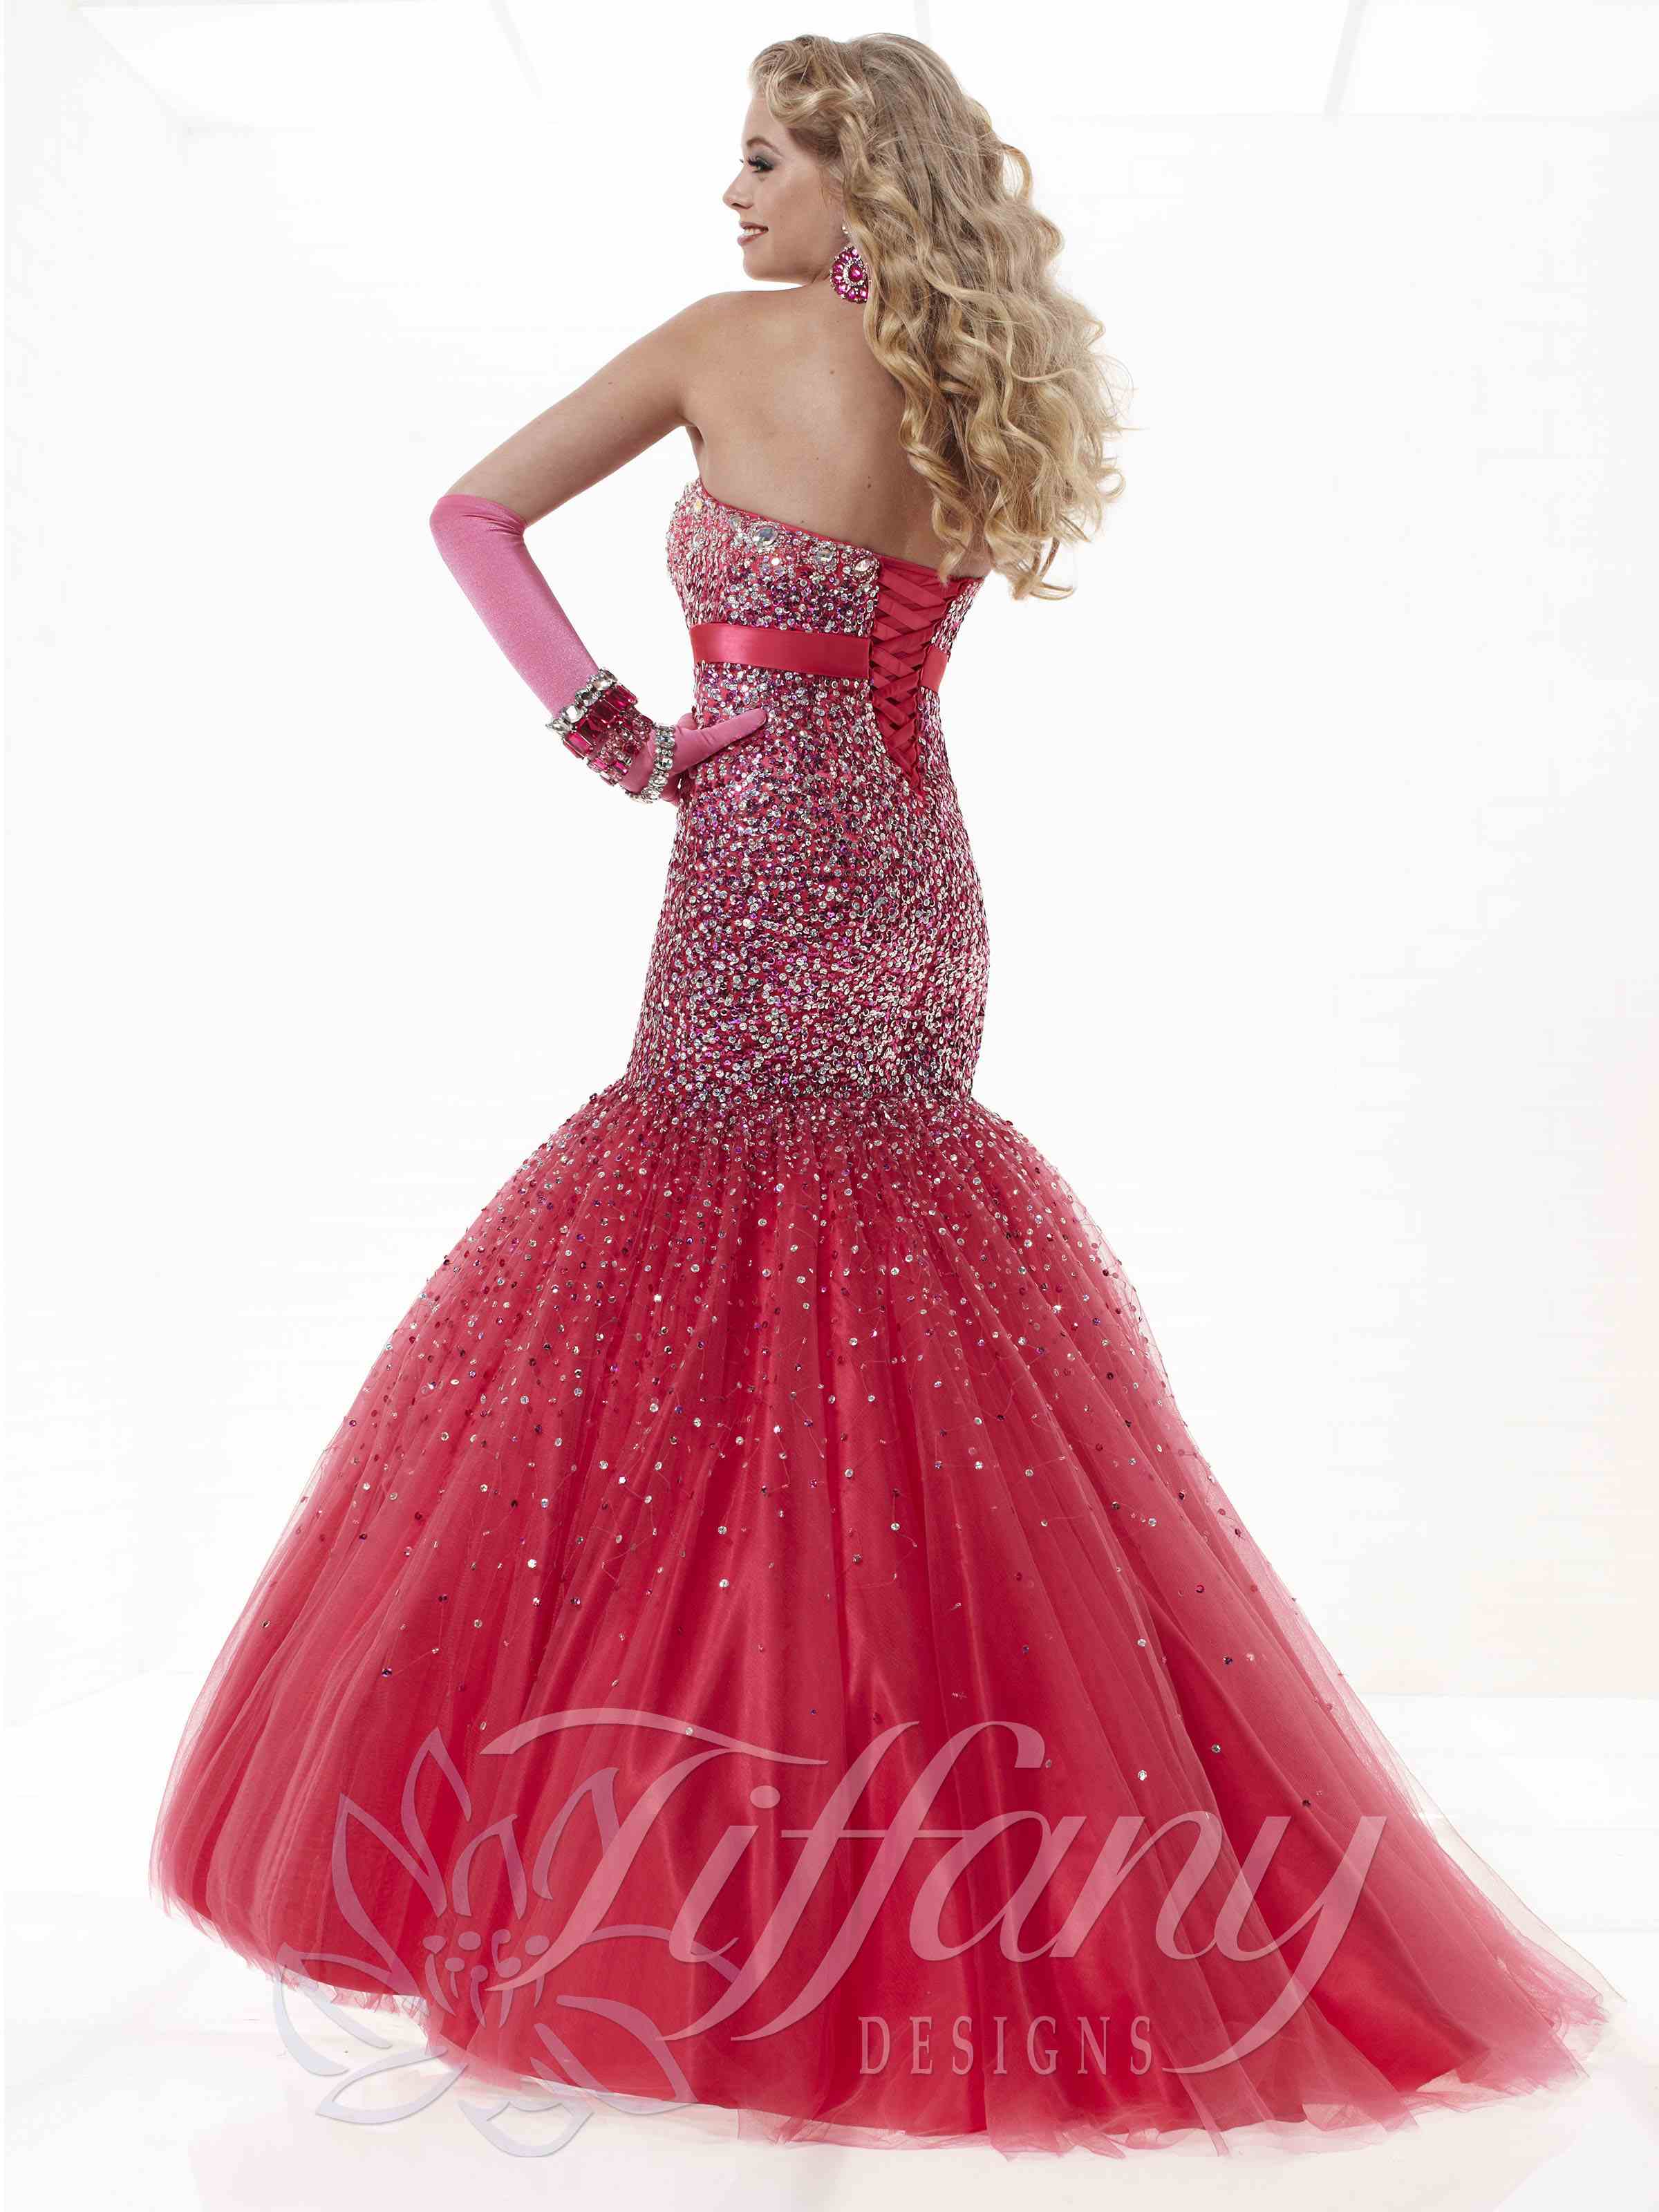 tiffany 16735 prom dress id 16735 this stunning tiffany dress 16735 ...